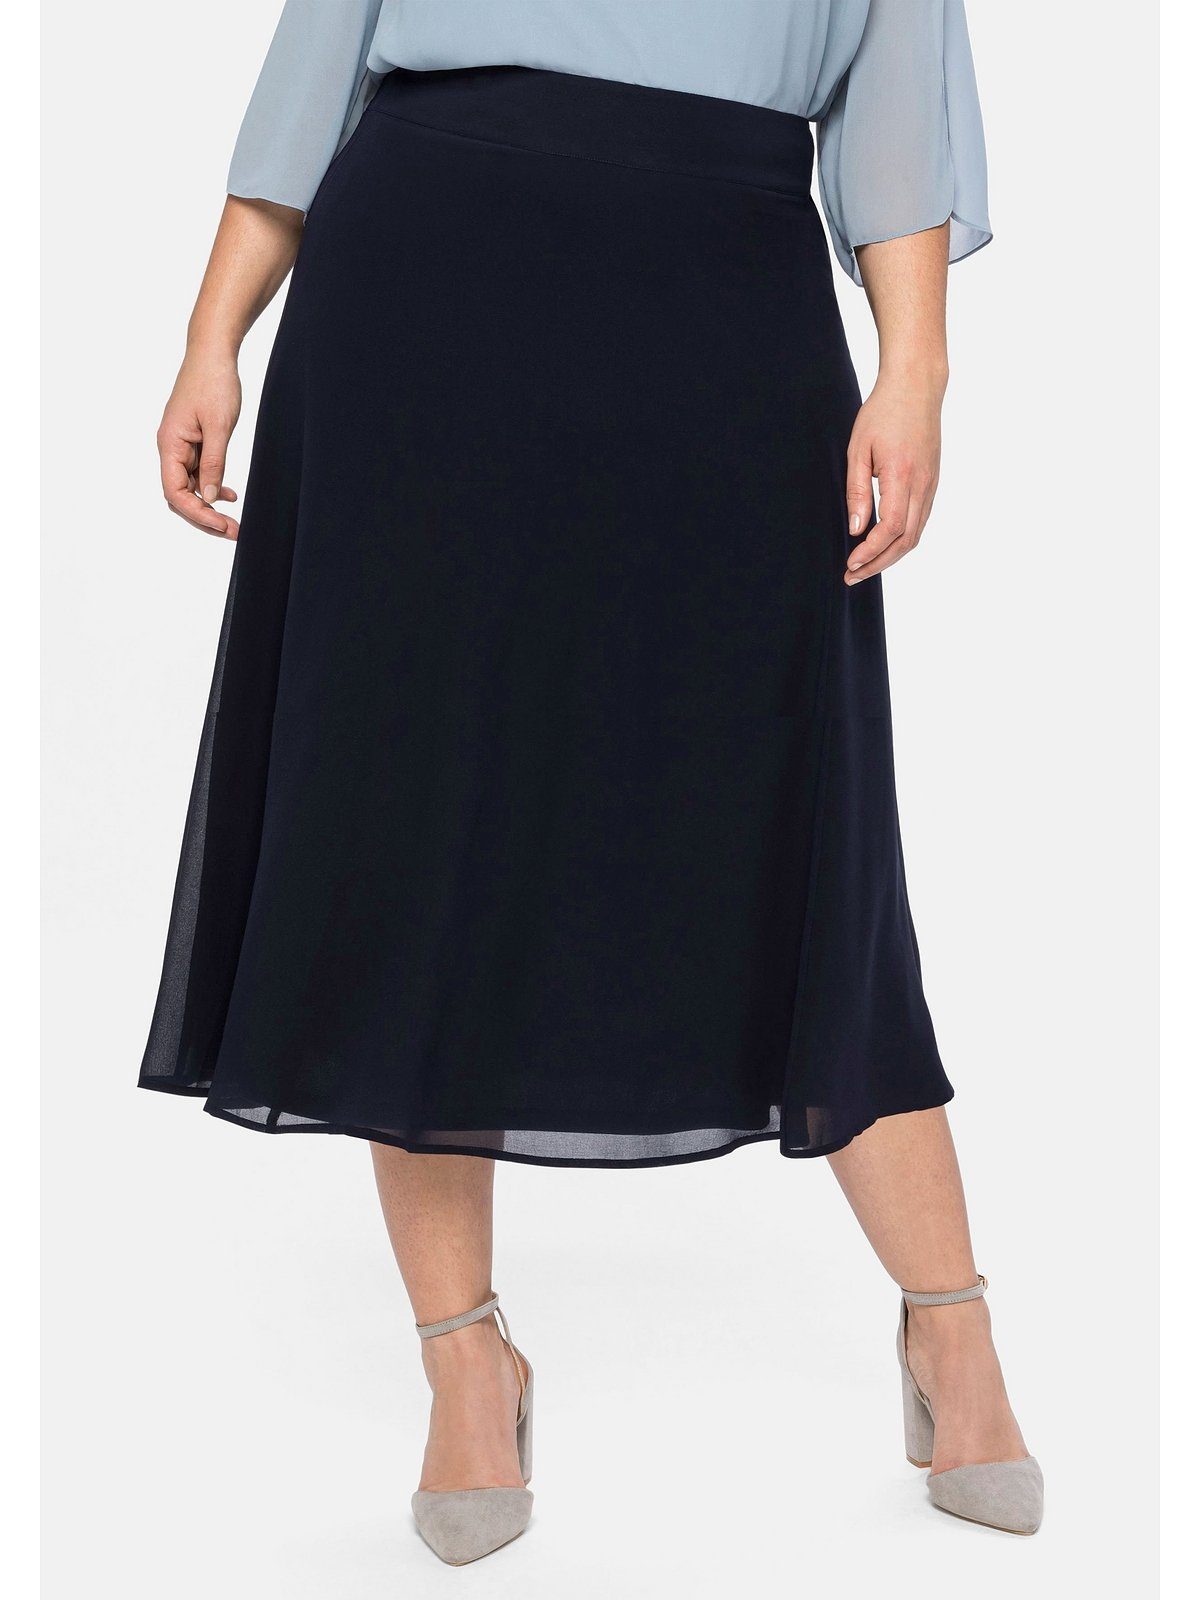 Elegante Röcke online kaufen | OTTO